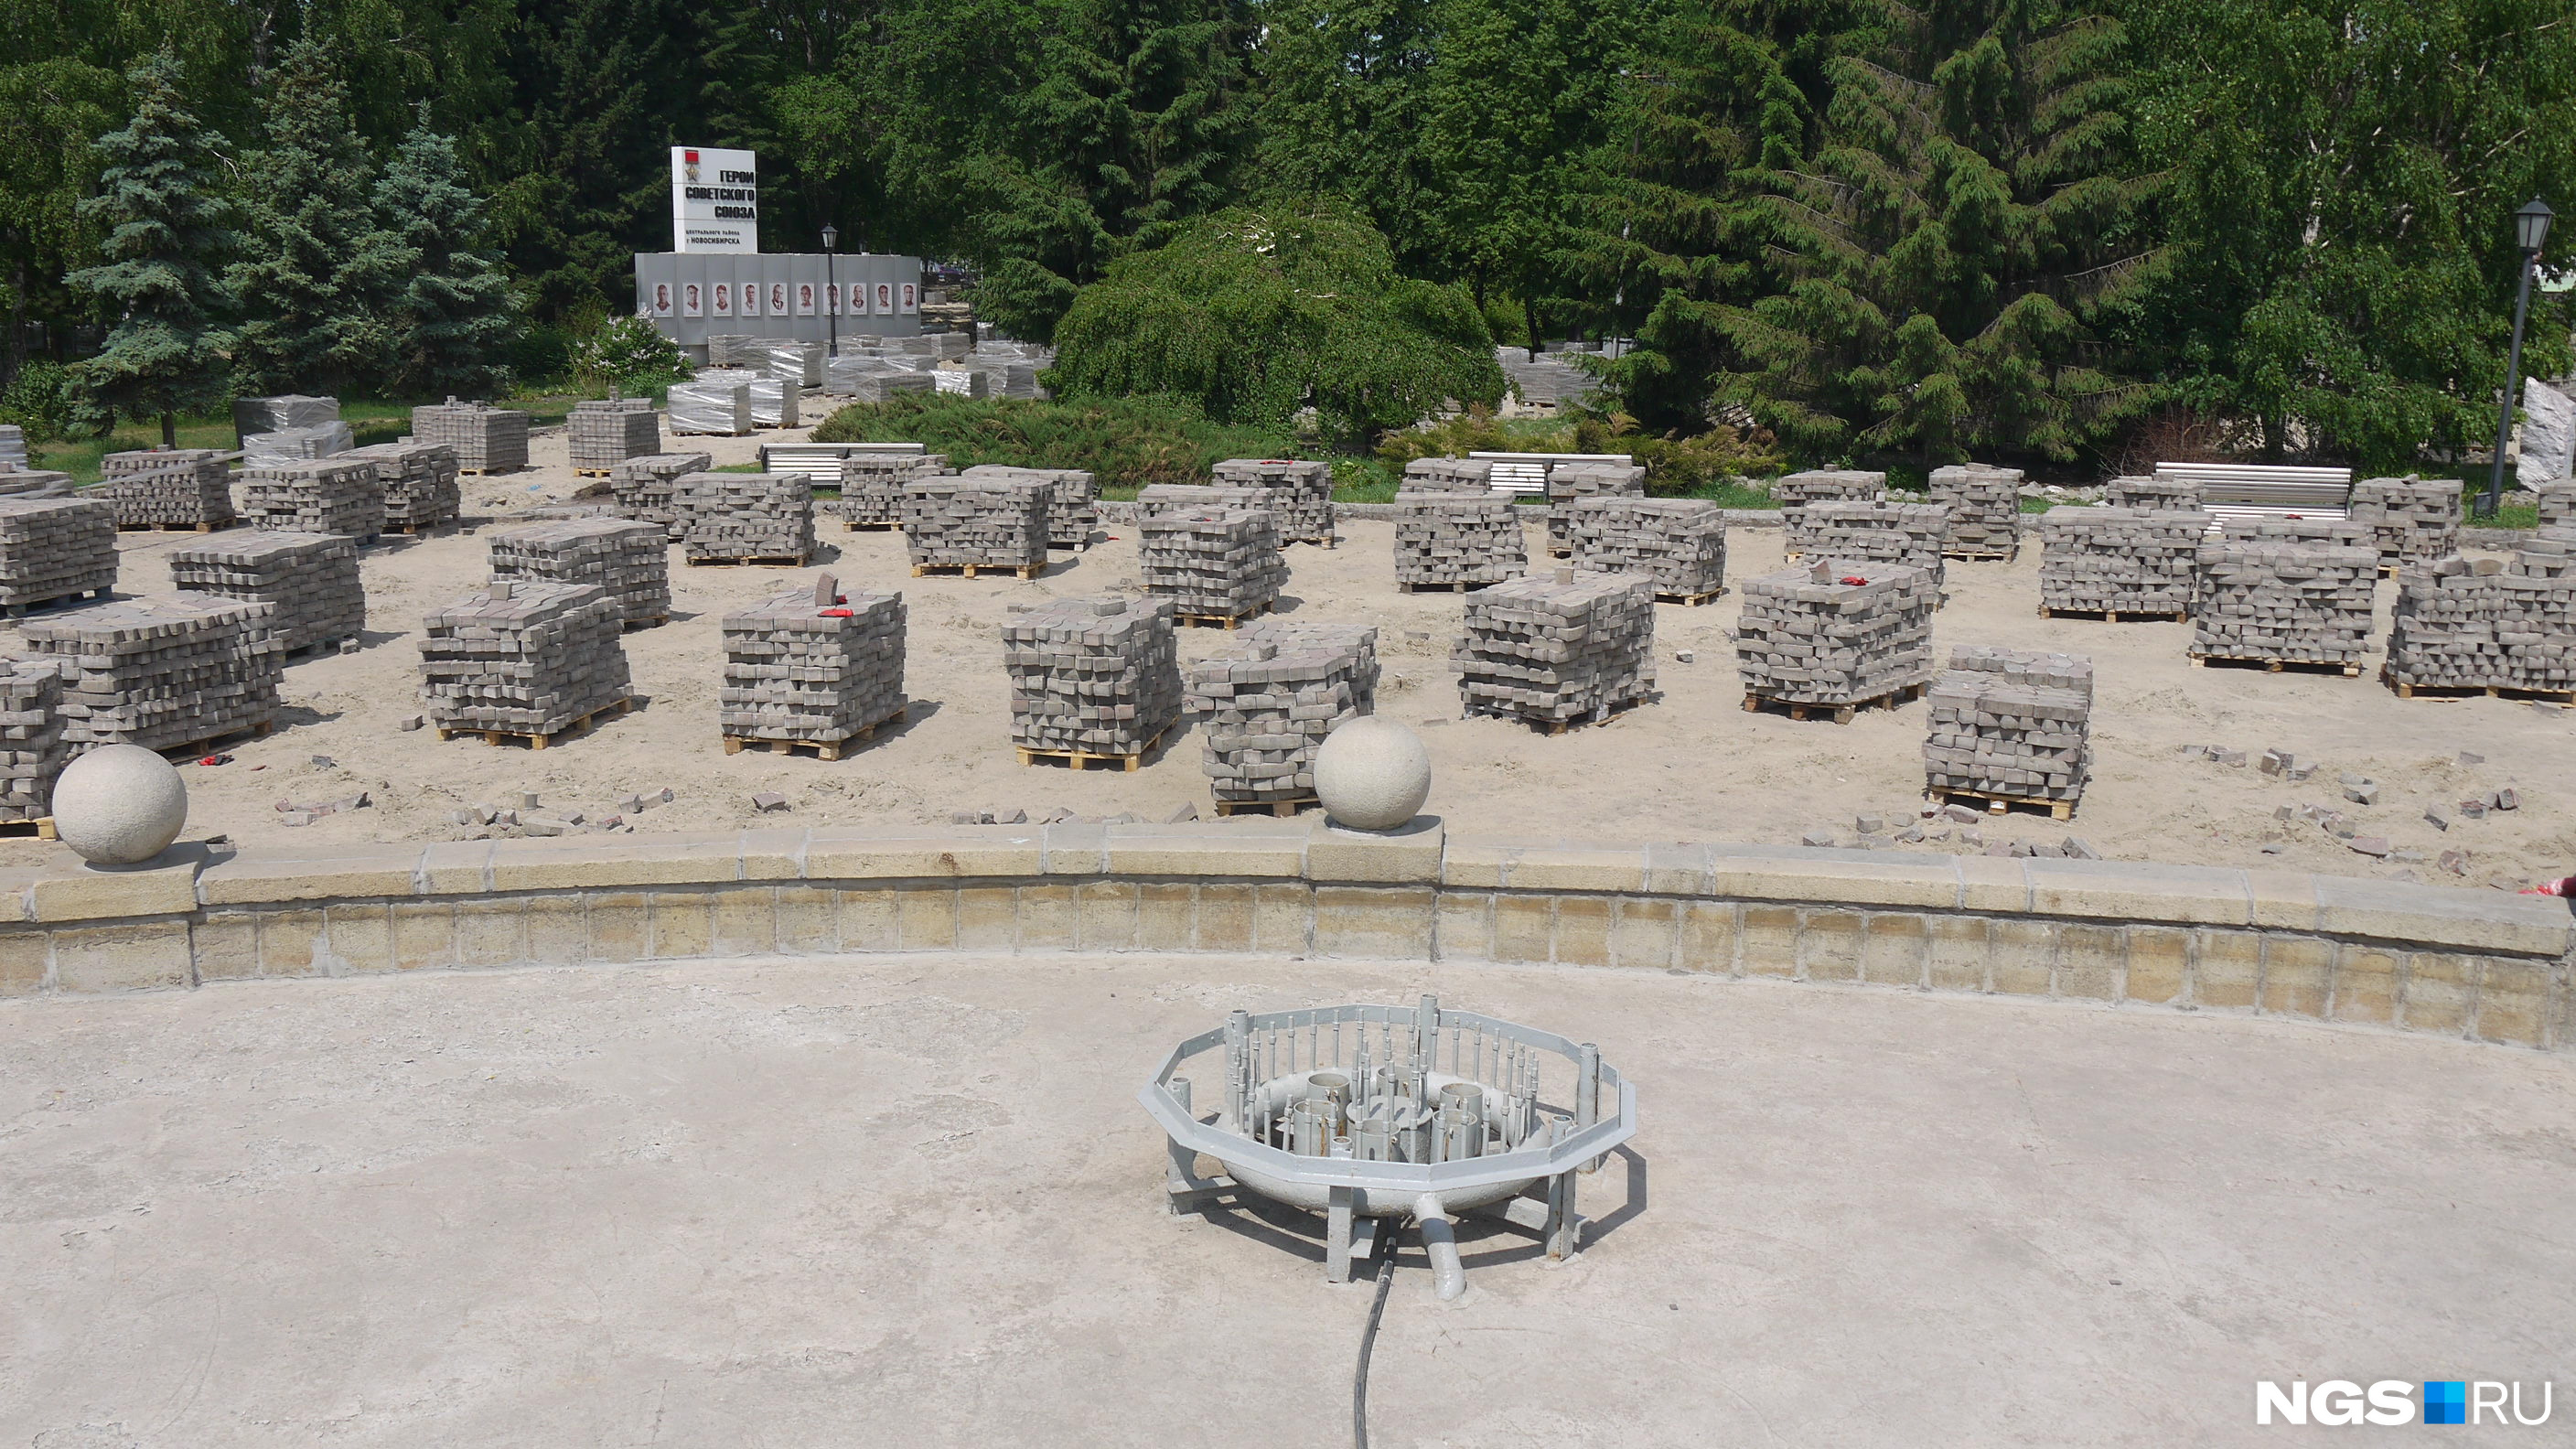 Пространство вокруг фонтана напоминает кладбище